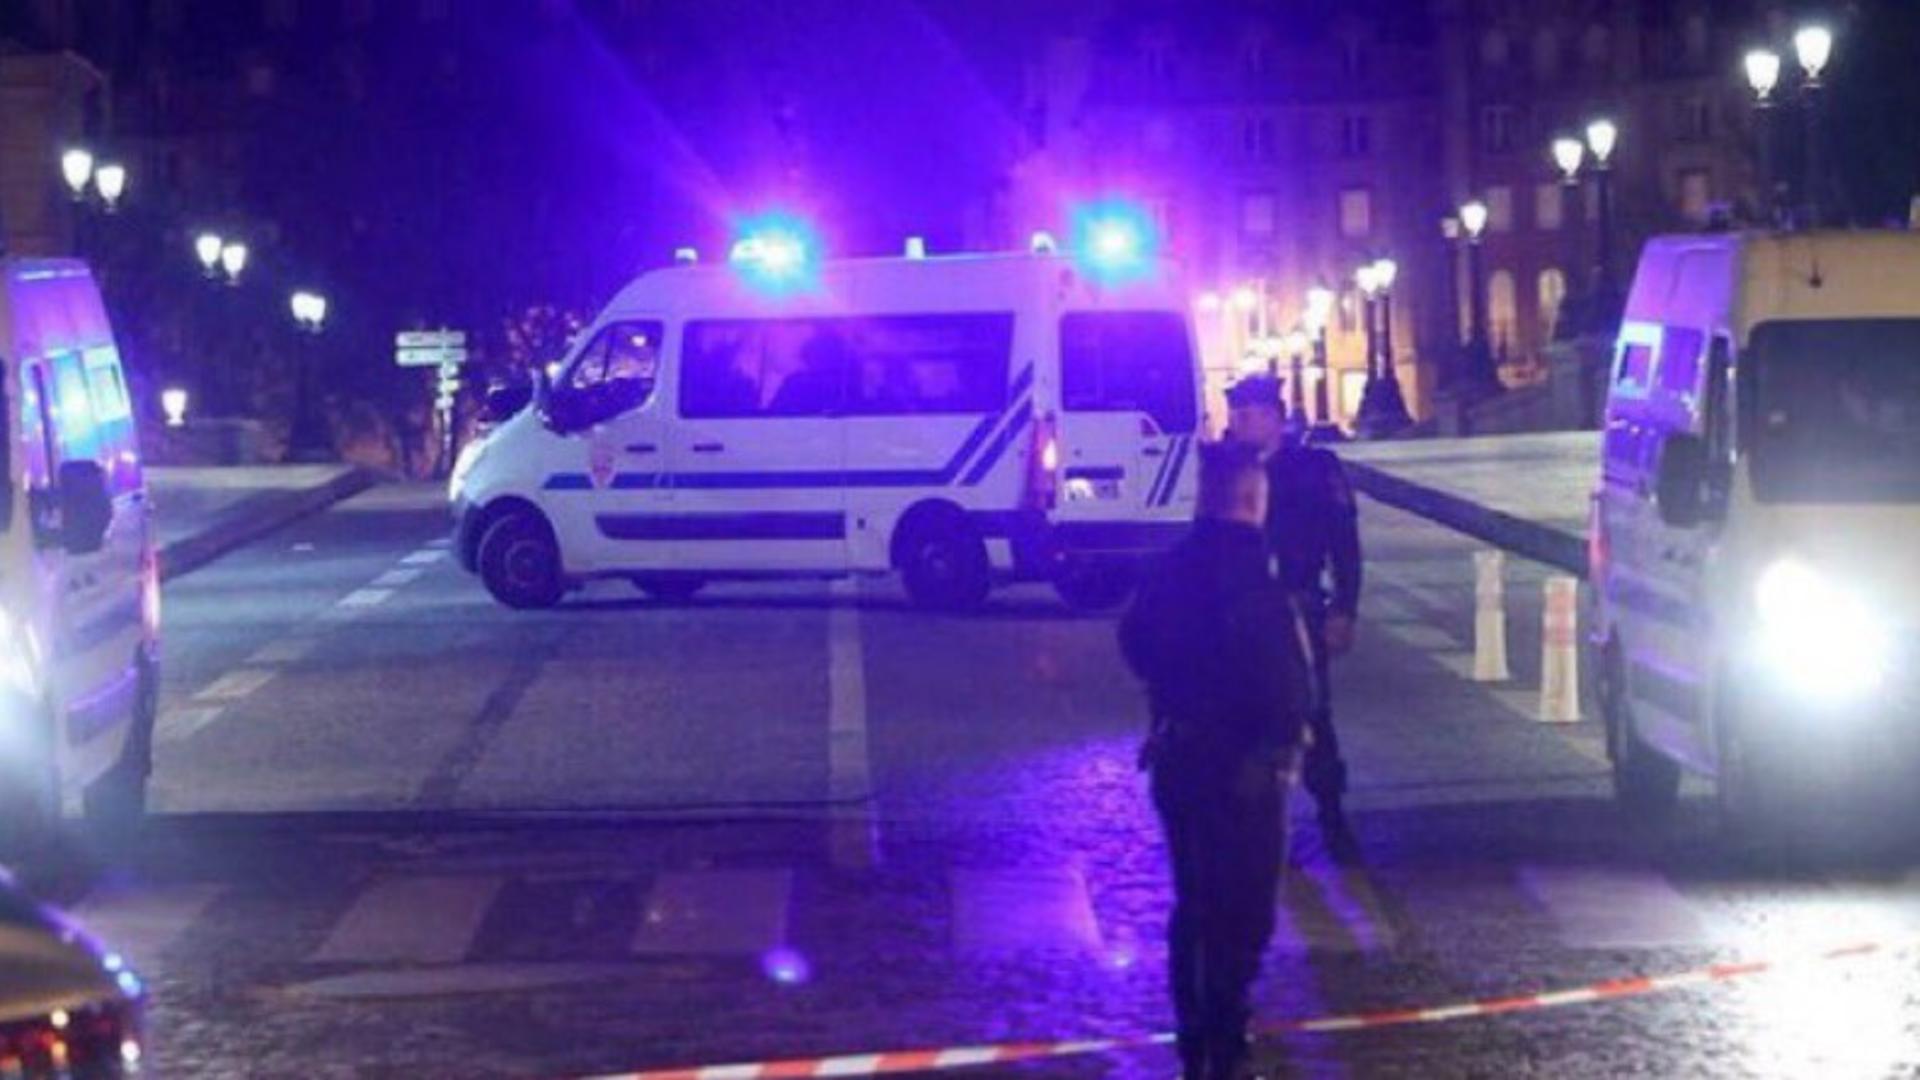 Atac în Franța: Un mort și 2 răniți după ce au fost înjunghiați pe stradă, în centrul Parisului - Agresorul a strigat „Allah akbar”